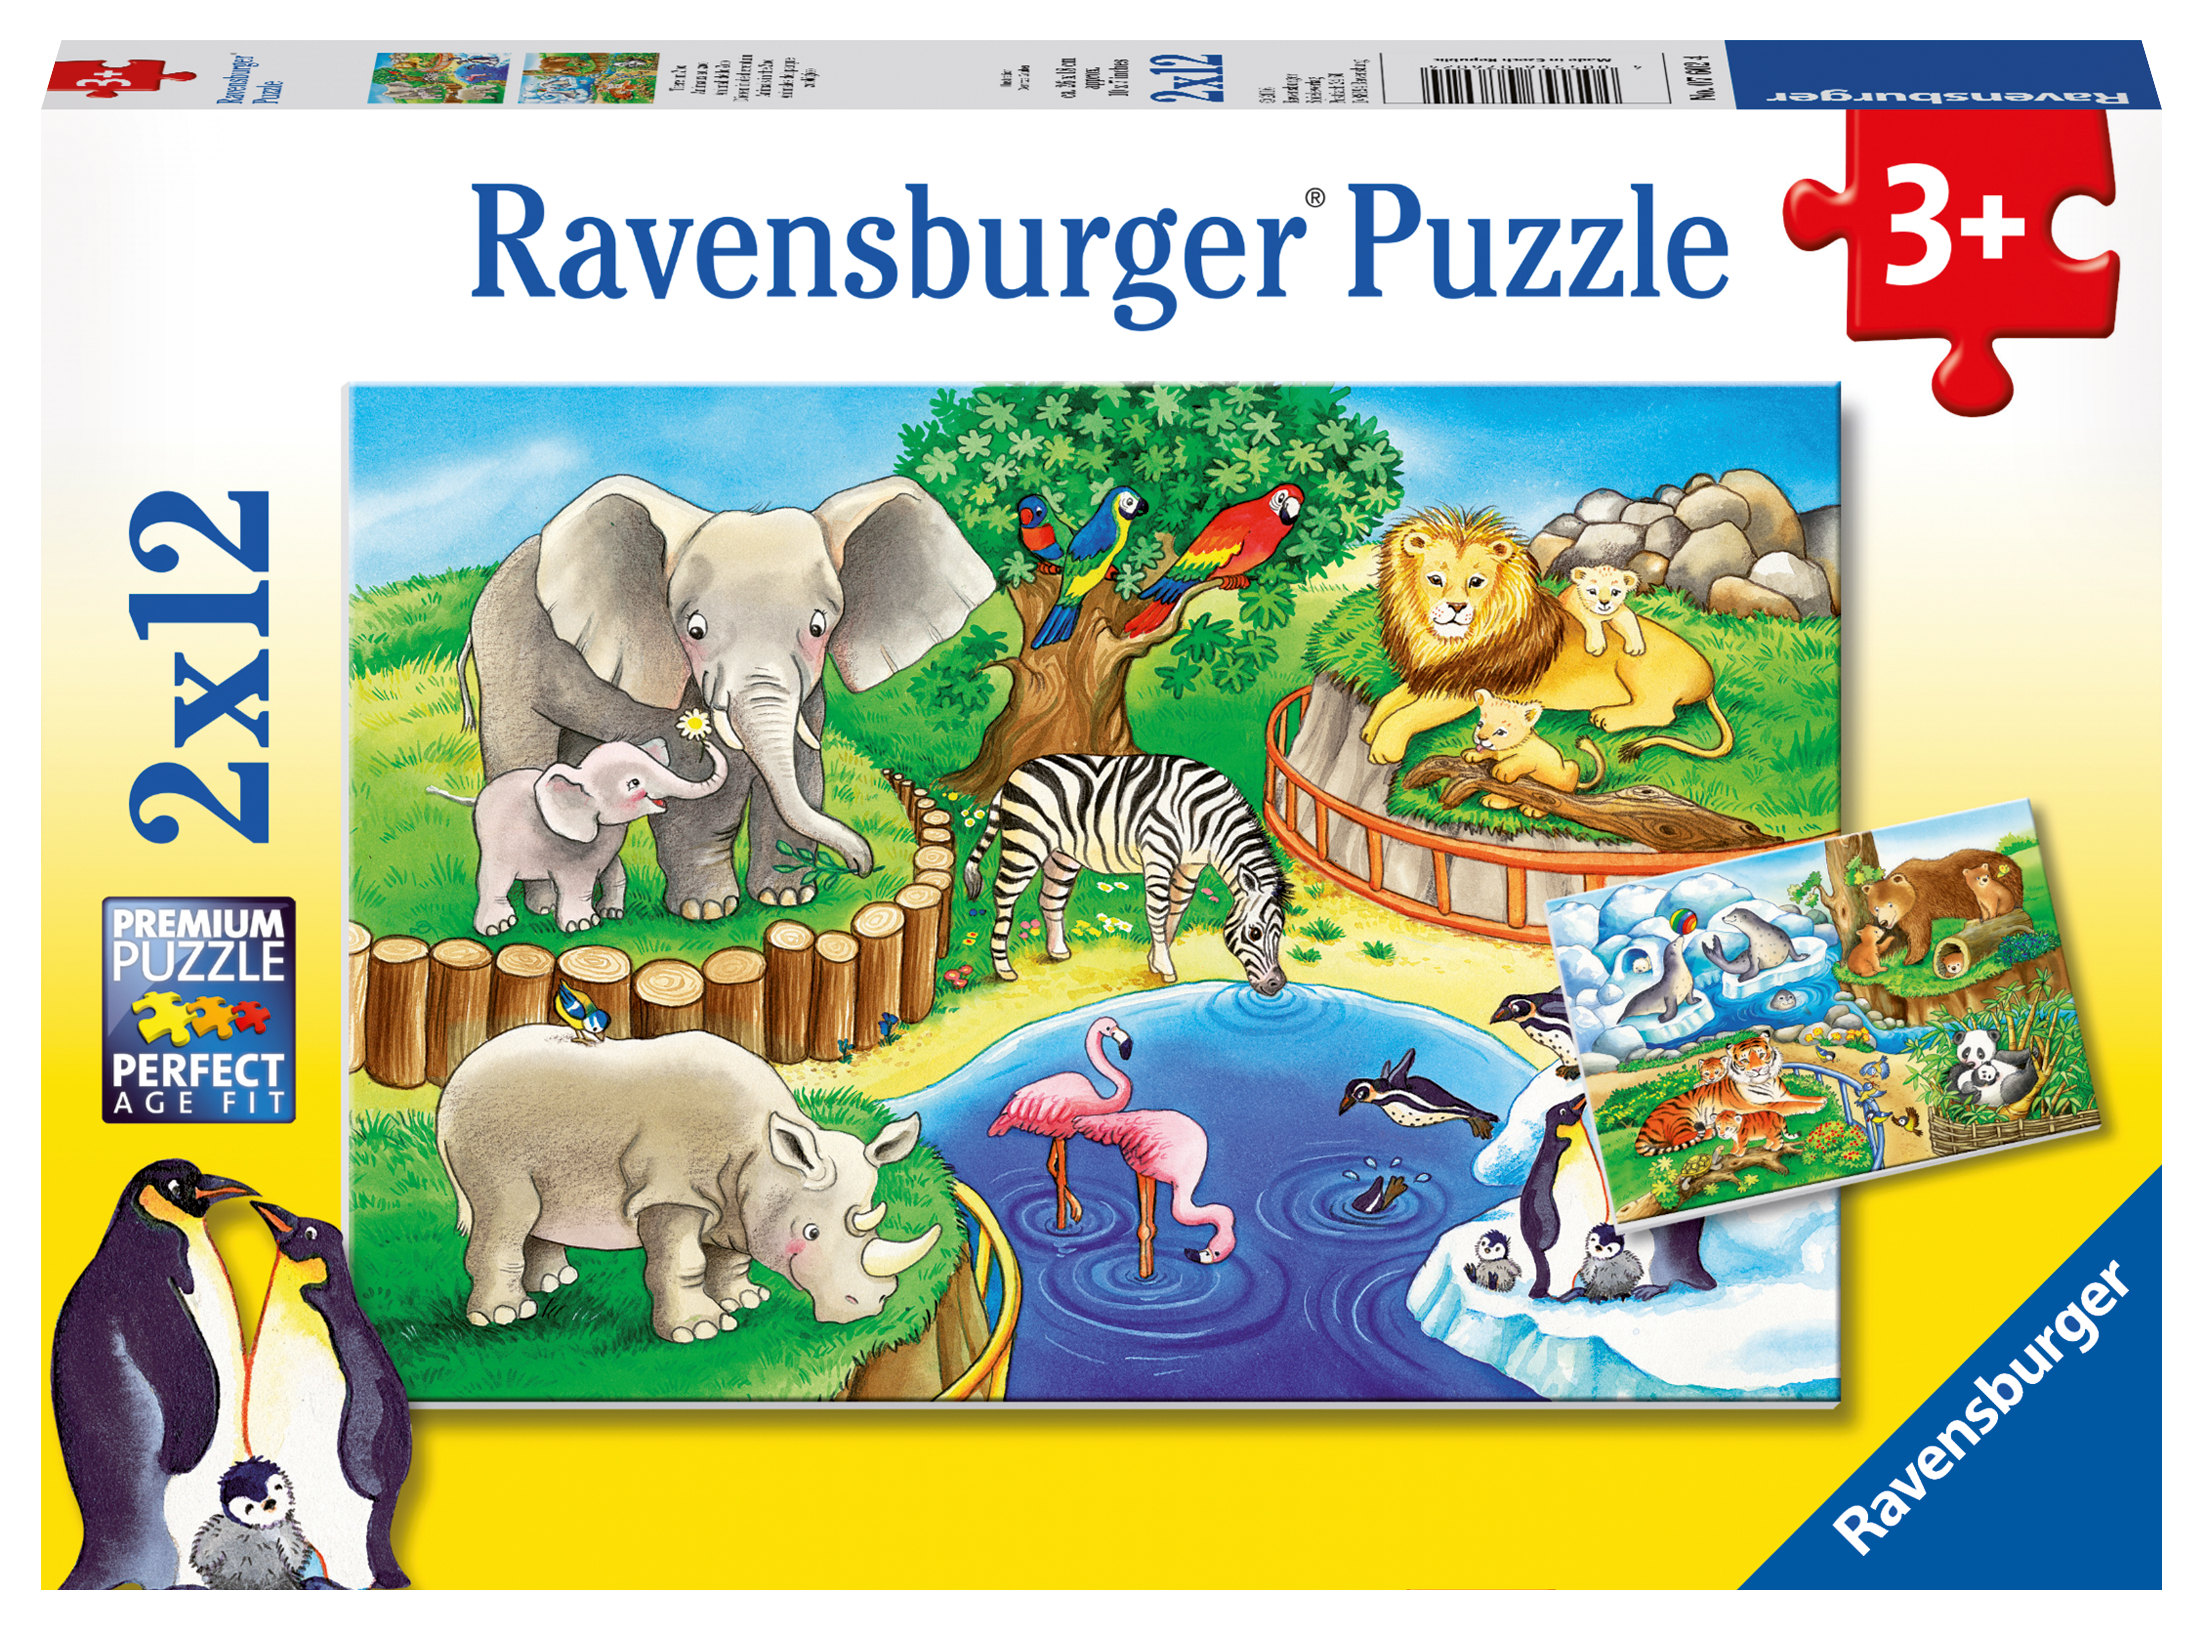 Puzzle Animaux de la jungle Ravensburger-12660 200 pièces Puzzles